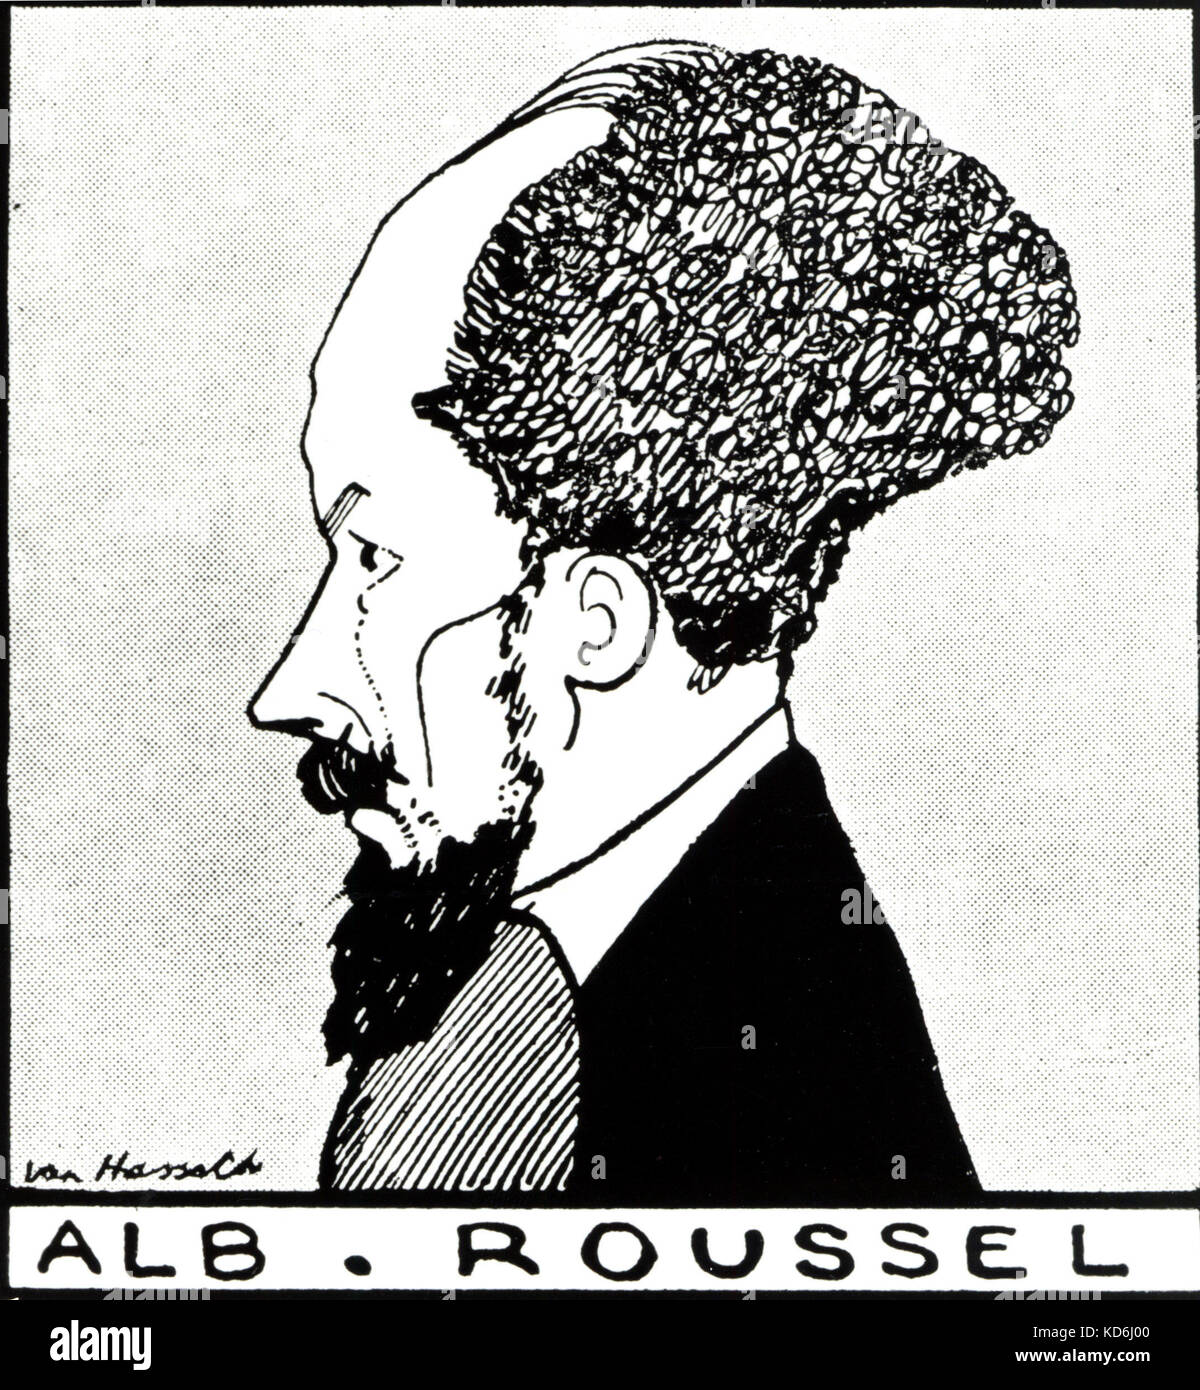 Albert Roussel, compositeur français, 1869-1937. Dessin de profil. Ian Hassack (dates non connues) Banque D'Images